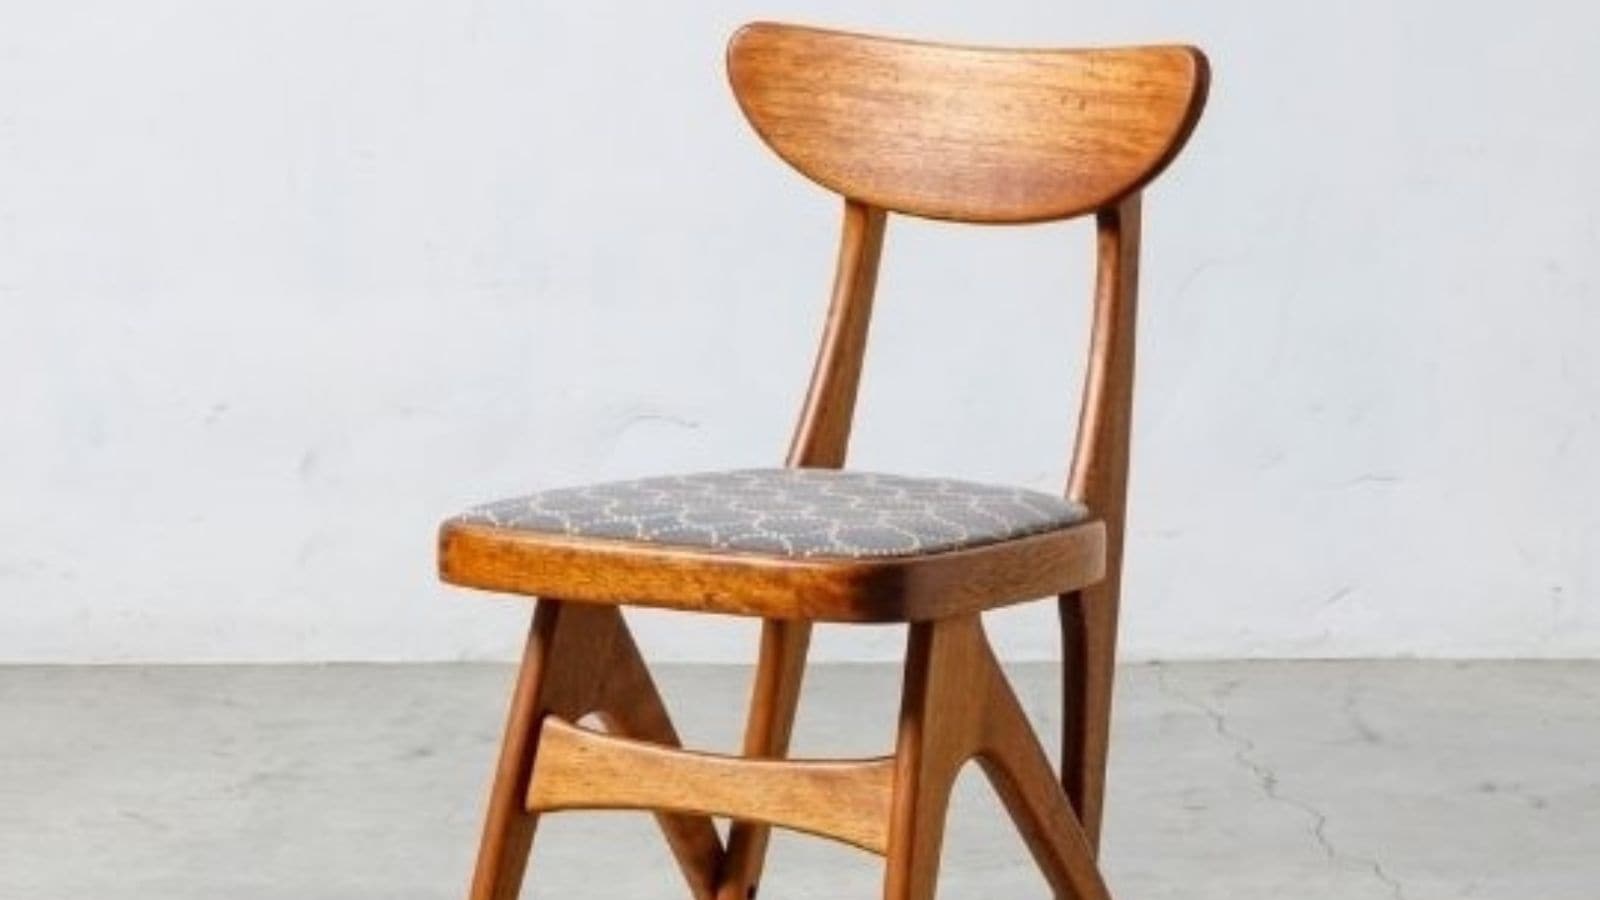 60年代を代表するマルニ木工の名品「デルタチェア」。ミナ ペルホネンでさらに光り輝く